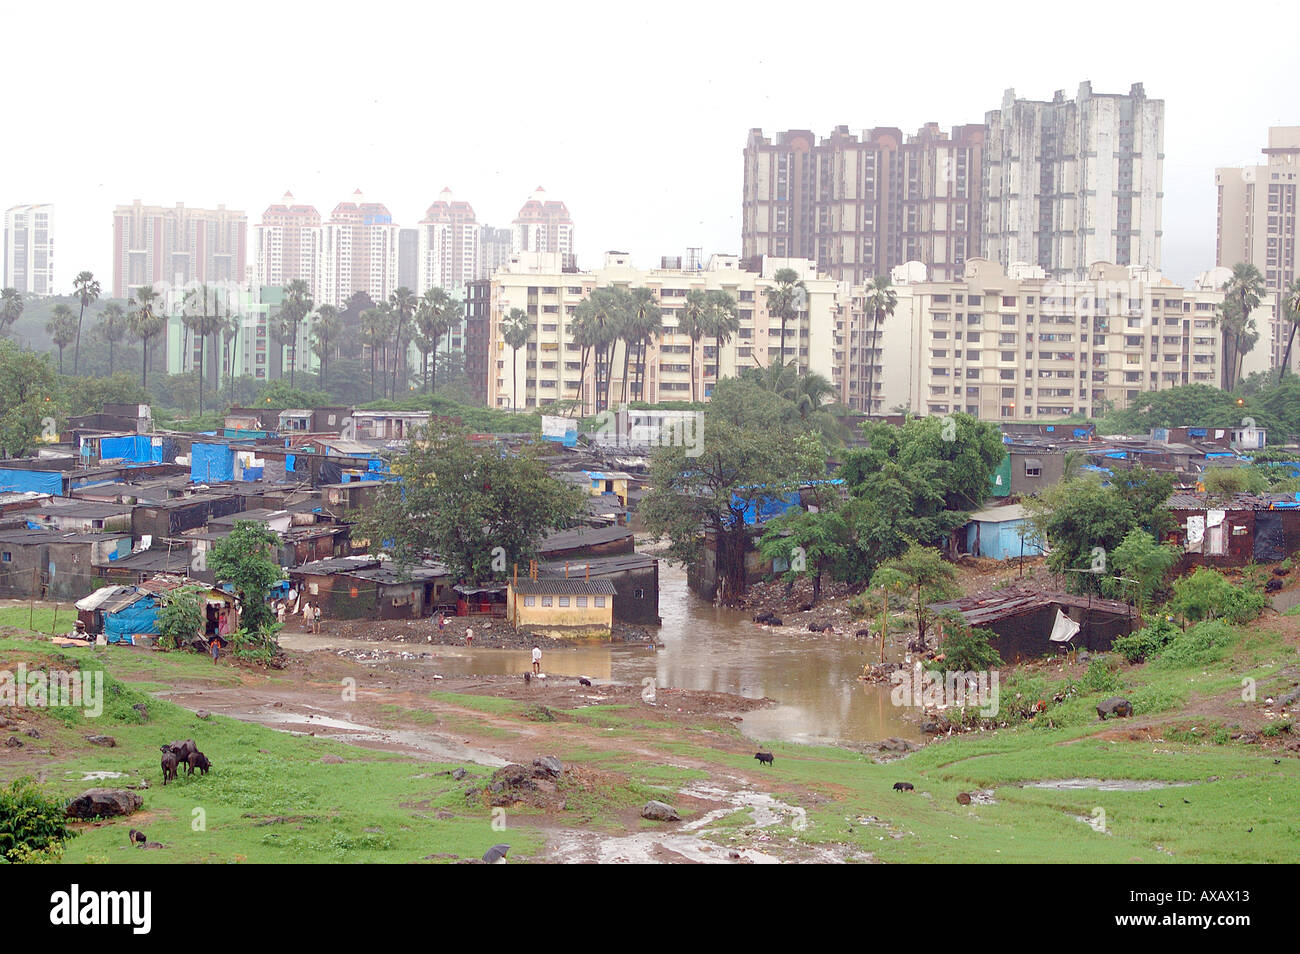 En contraste la mousson montrant des maisons d'habitation immeubles de grande hauteur riches pauvres abris bâches de couverture en PVC bleu Bombay Mumbai Inde Asie Banque D'Images